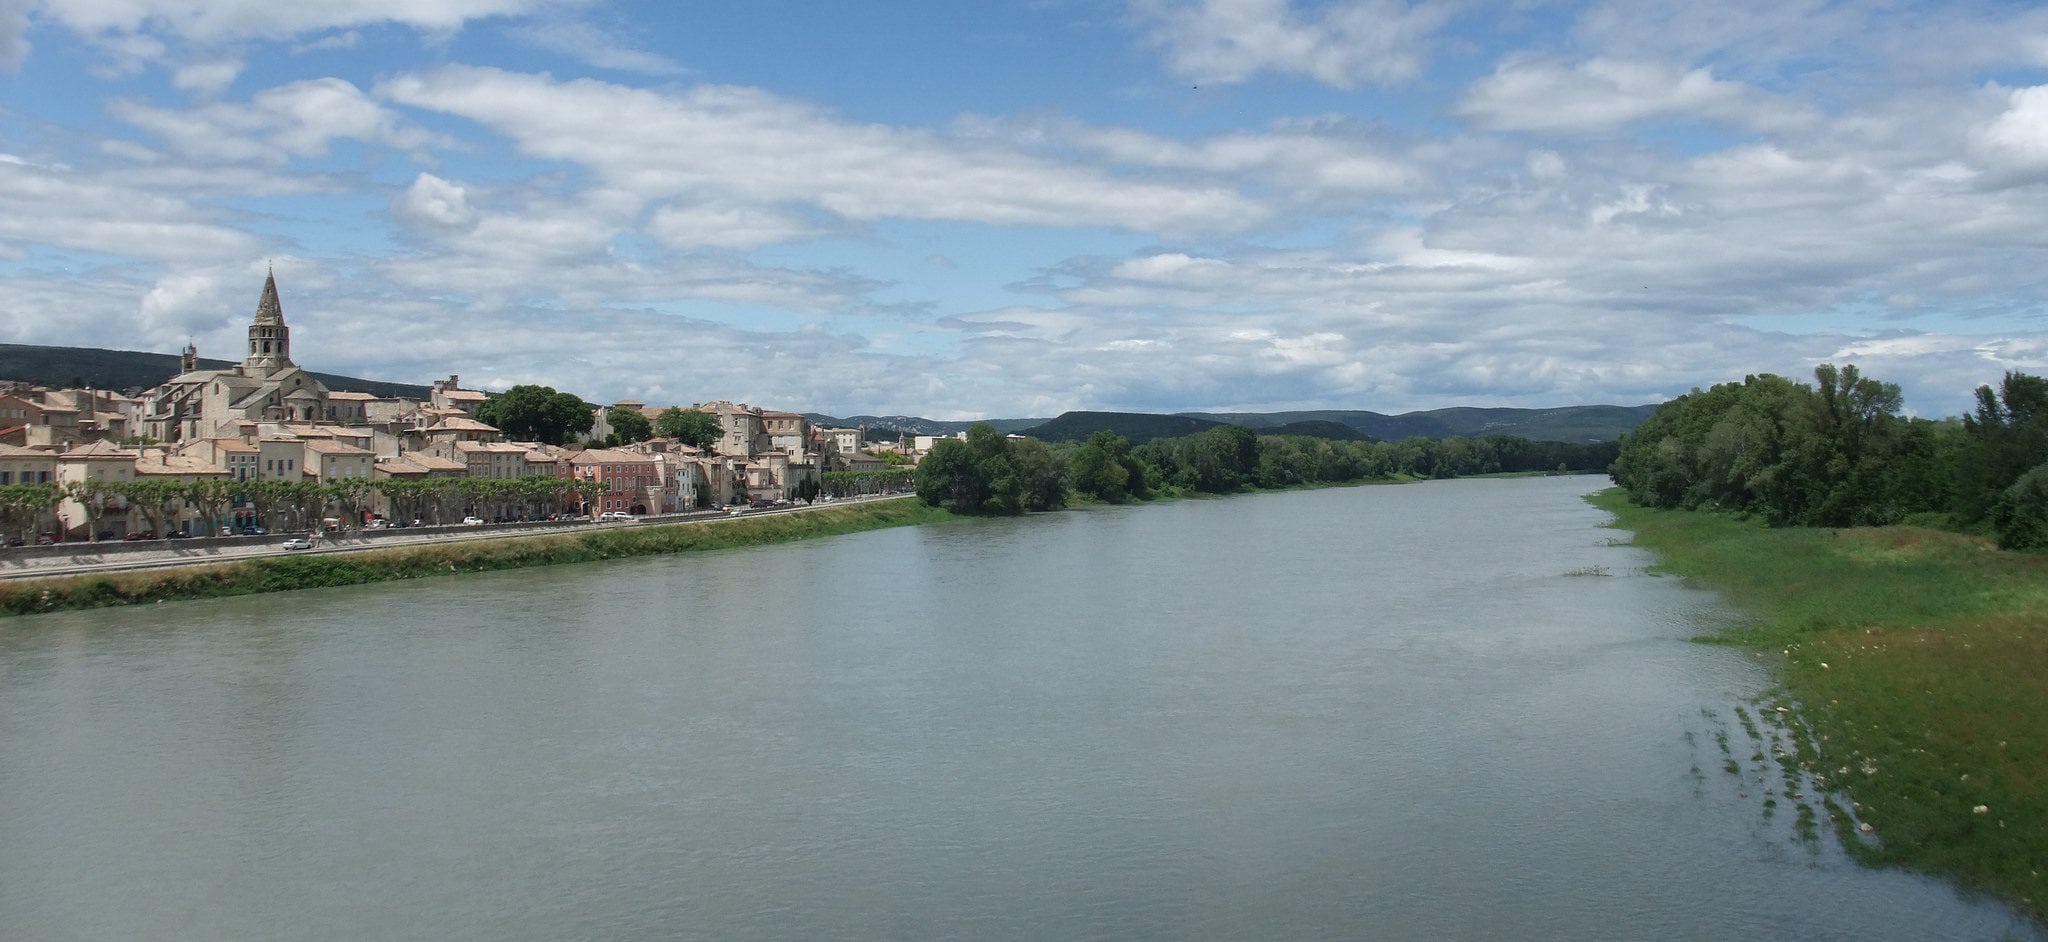 Bourg-Saint-Andéol, en Ardèche sur le rive droite du Rhône.CC Laurent Lebois